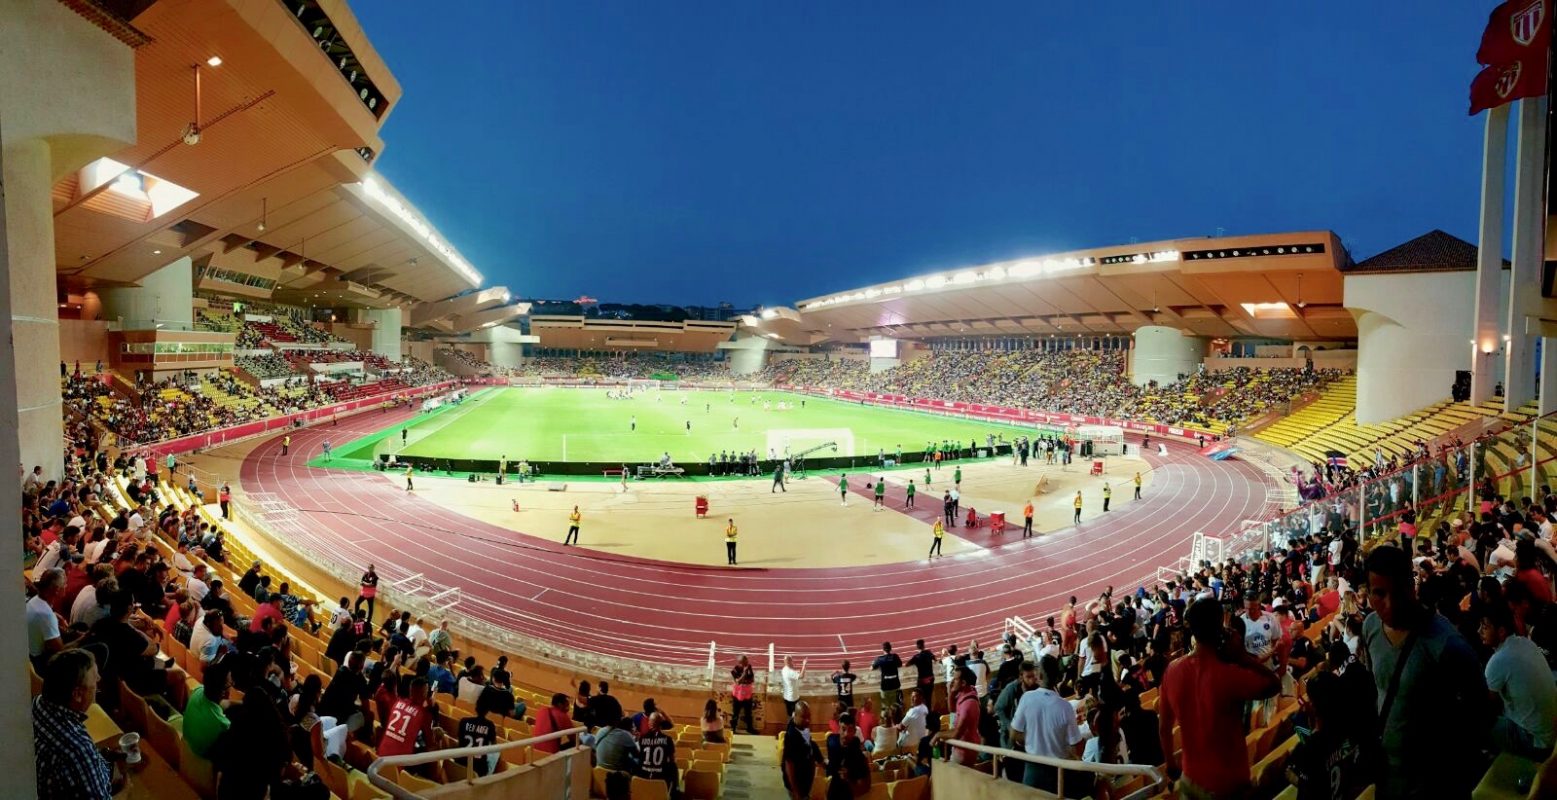 Le stade Louis II qui accueille les matchs de l'AS Monaco